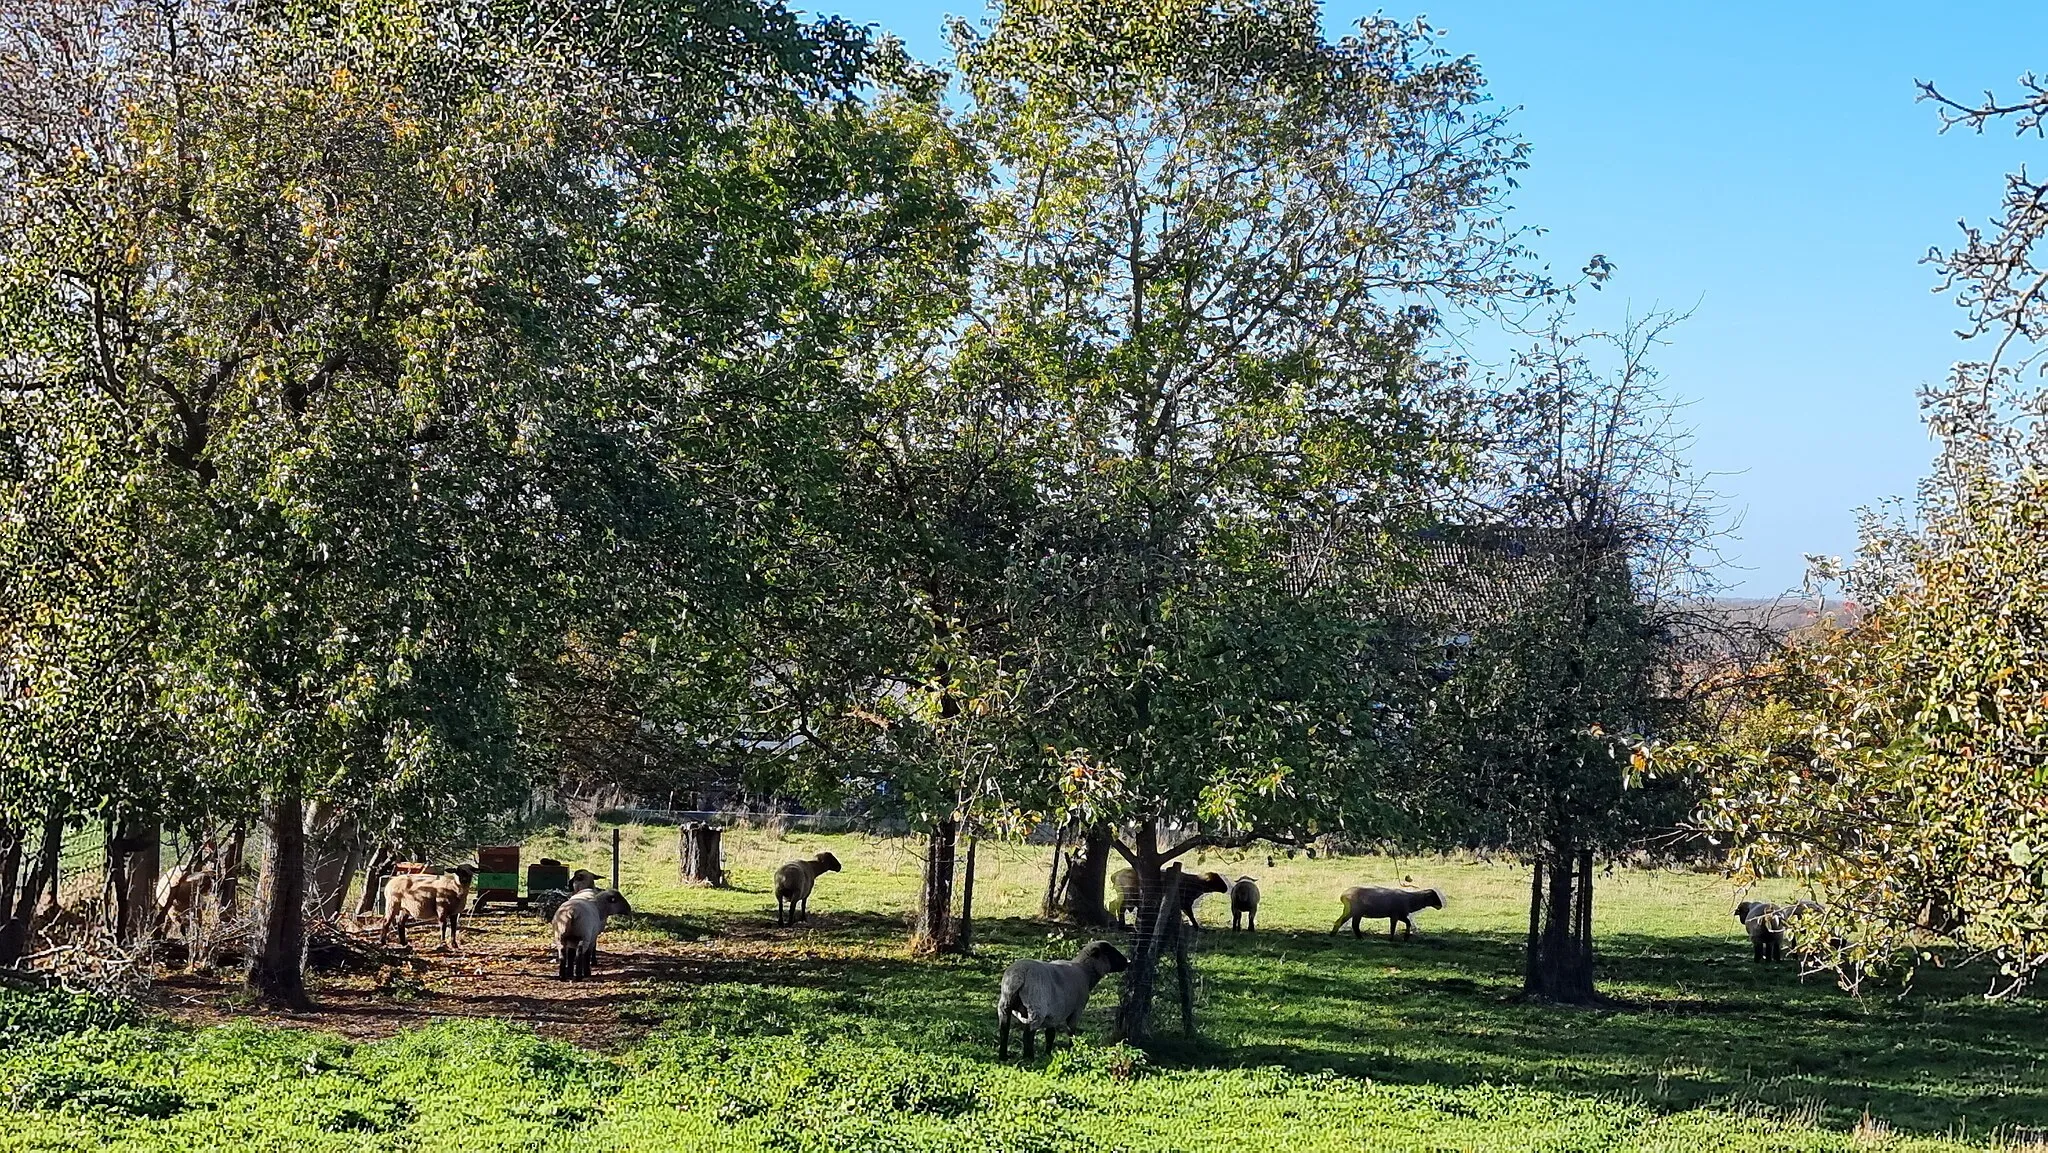 Photo showing: In Northen am Westhang vom Benther Berg wurde eine Streuobstwiese mit alten Obstbäumen eingehägt, die von Schafen gepflegt werden. Offenbar haben die Viecher etwas entdeckt ...